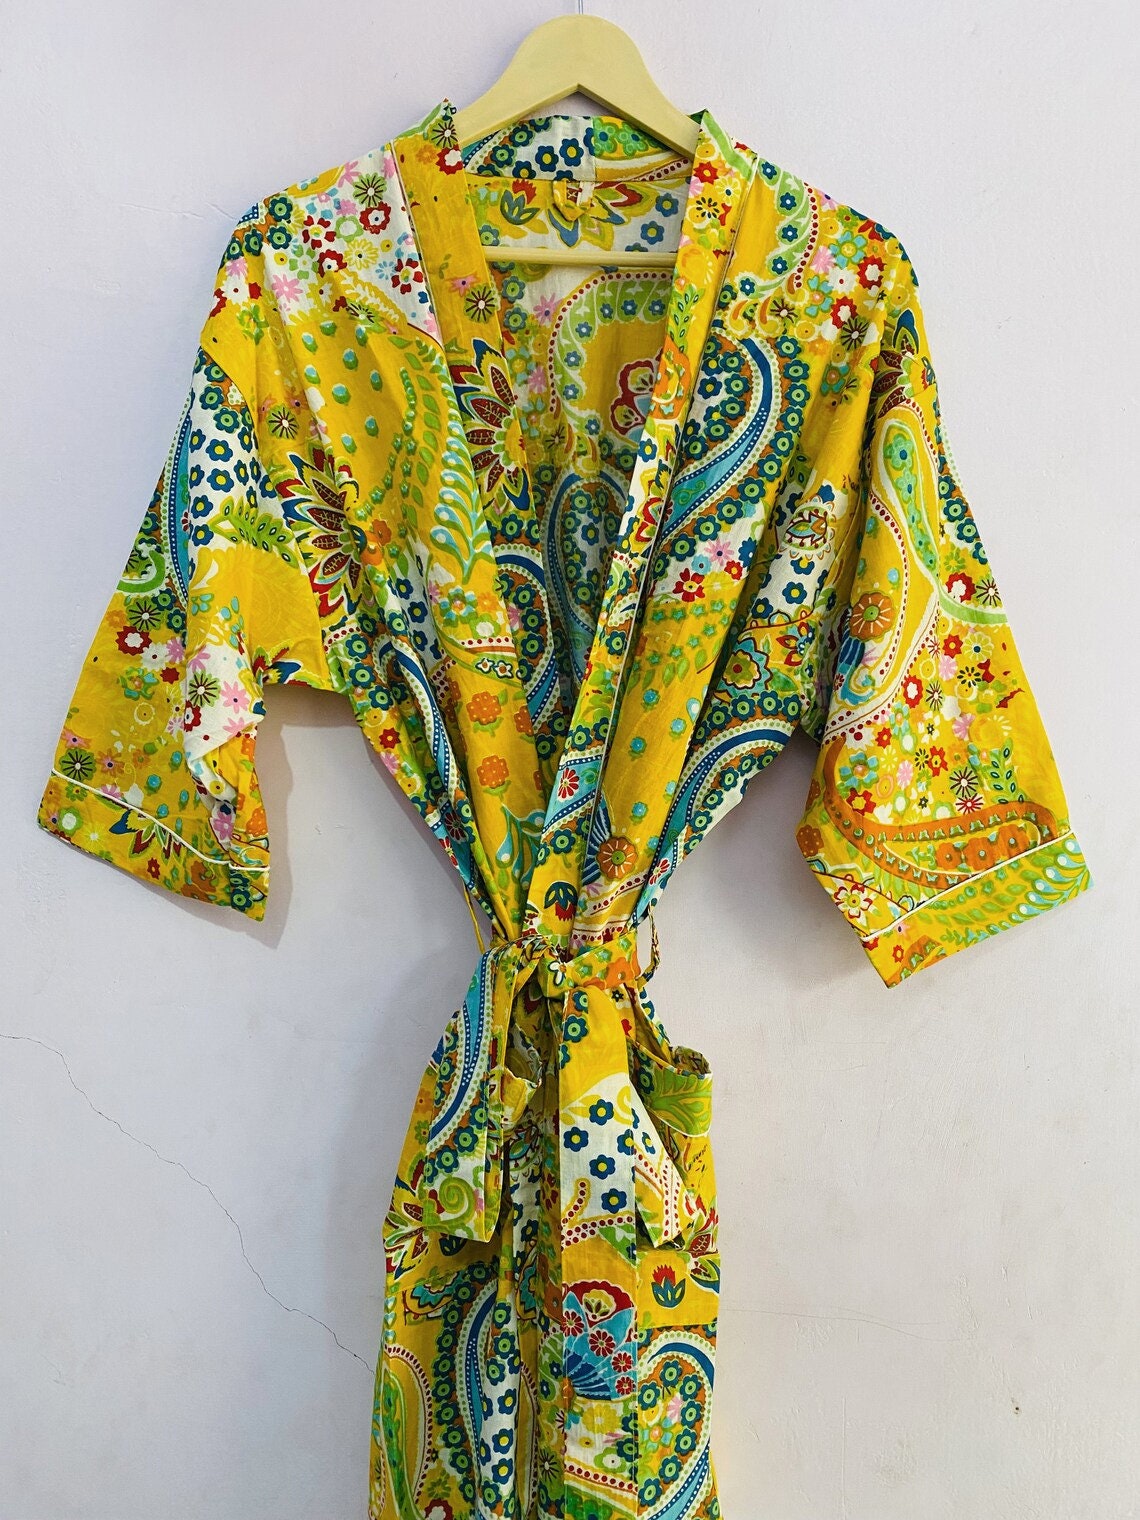 Yellow Floral Print Cotton Kimono Kimono Robe For Women | Etsy